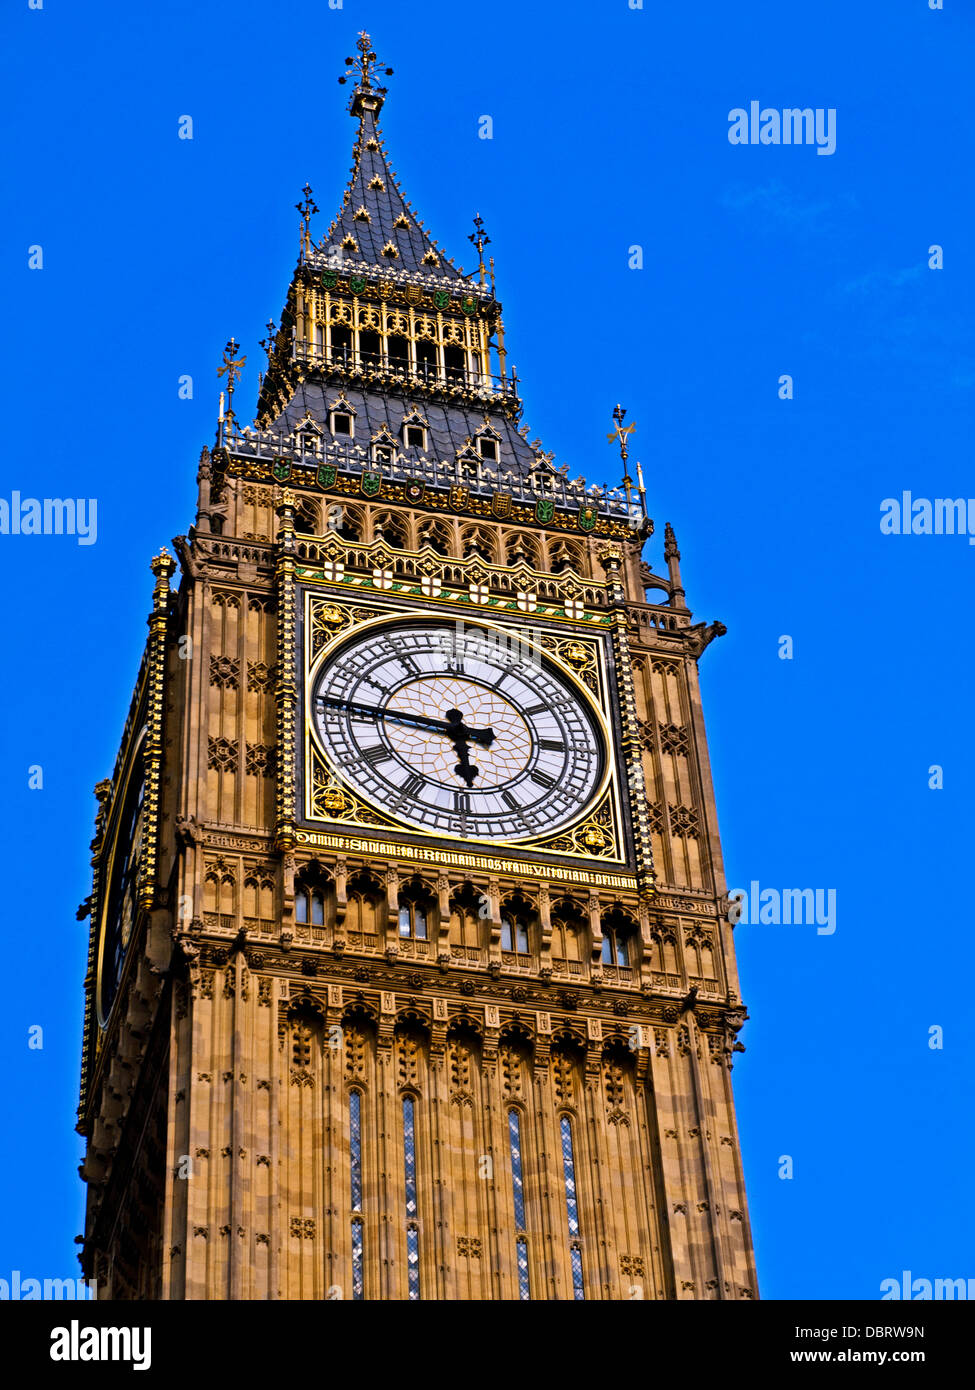 Détail de Big Ben, situé à l'extrémité nord du Palais de Westminster (Parlement), City of Westminster Banque D'Images